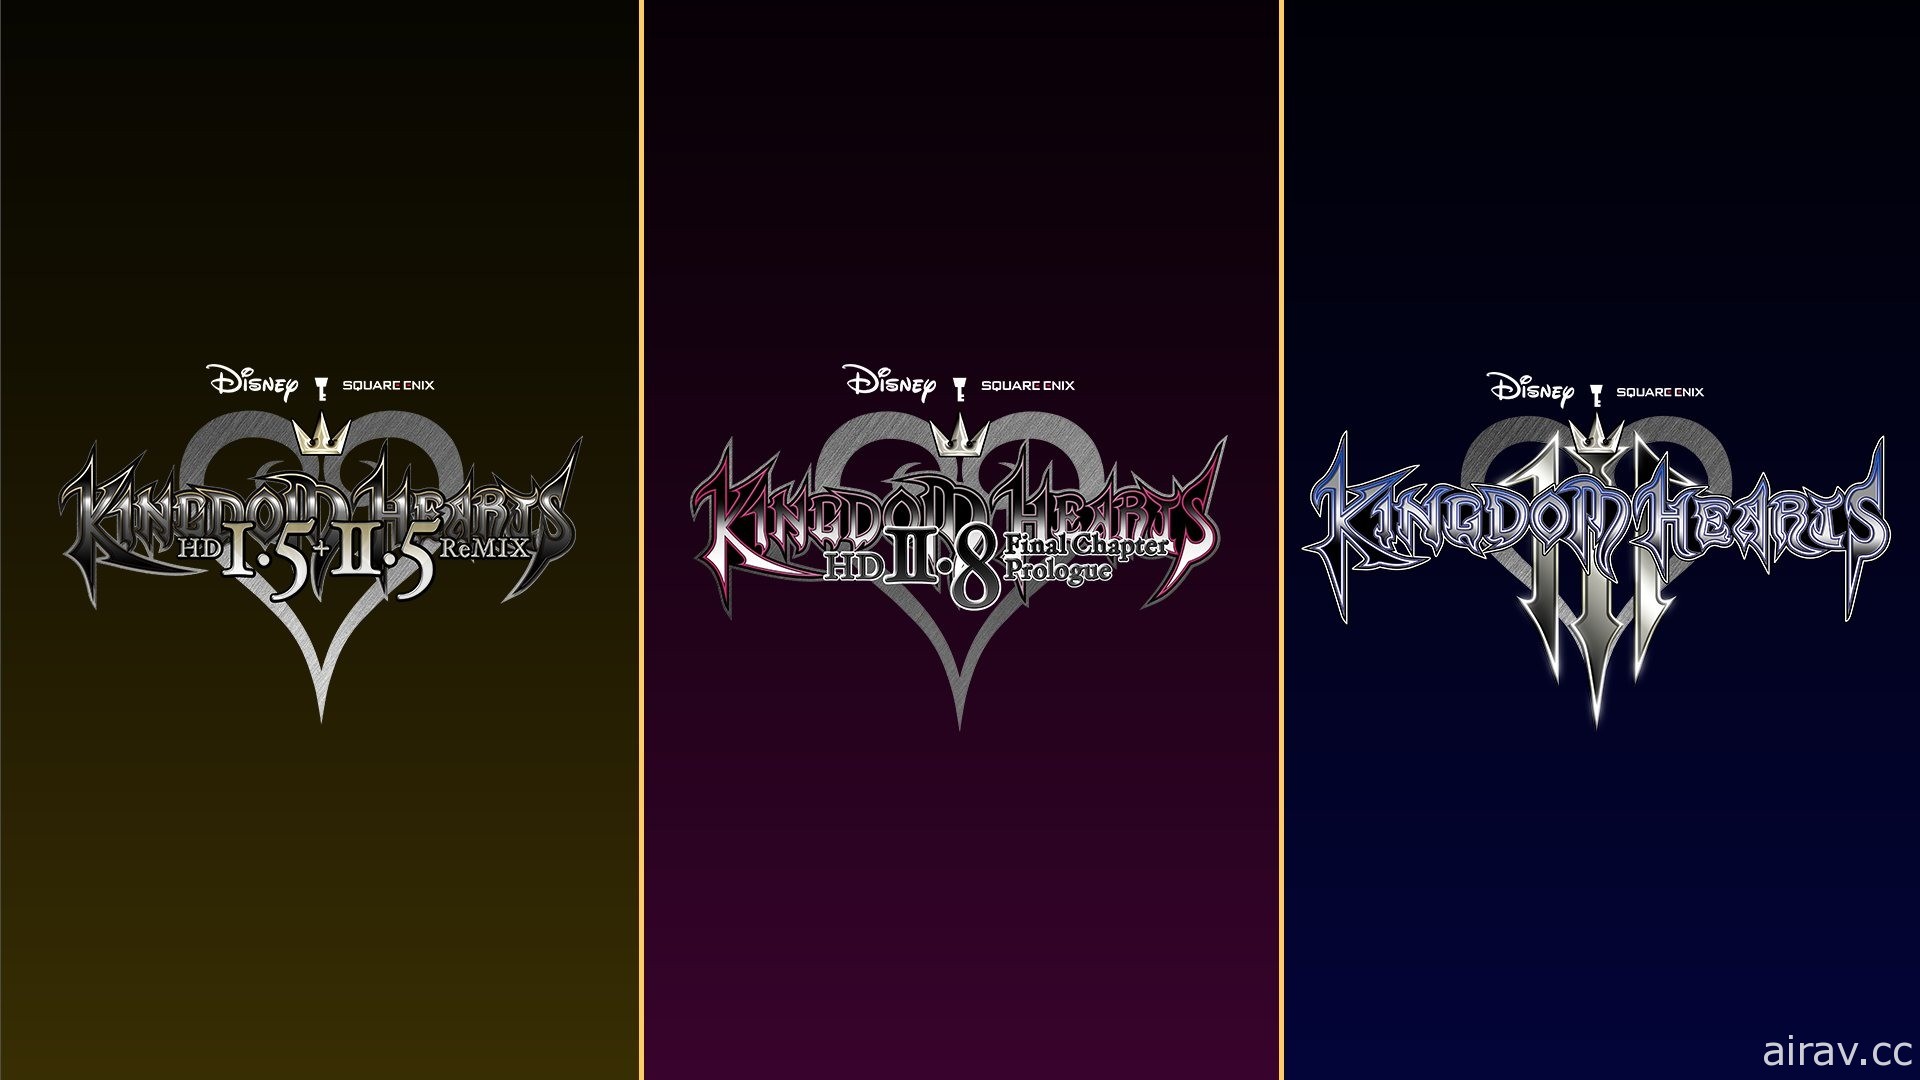 《王國之心》系列 3 款作品《1.5 + 2.5》《2.8》《3》雲端版確定登陸 Switch 平台